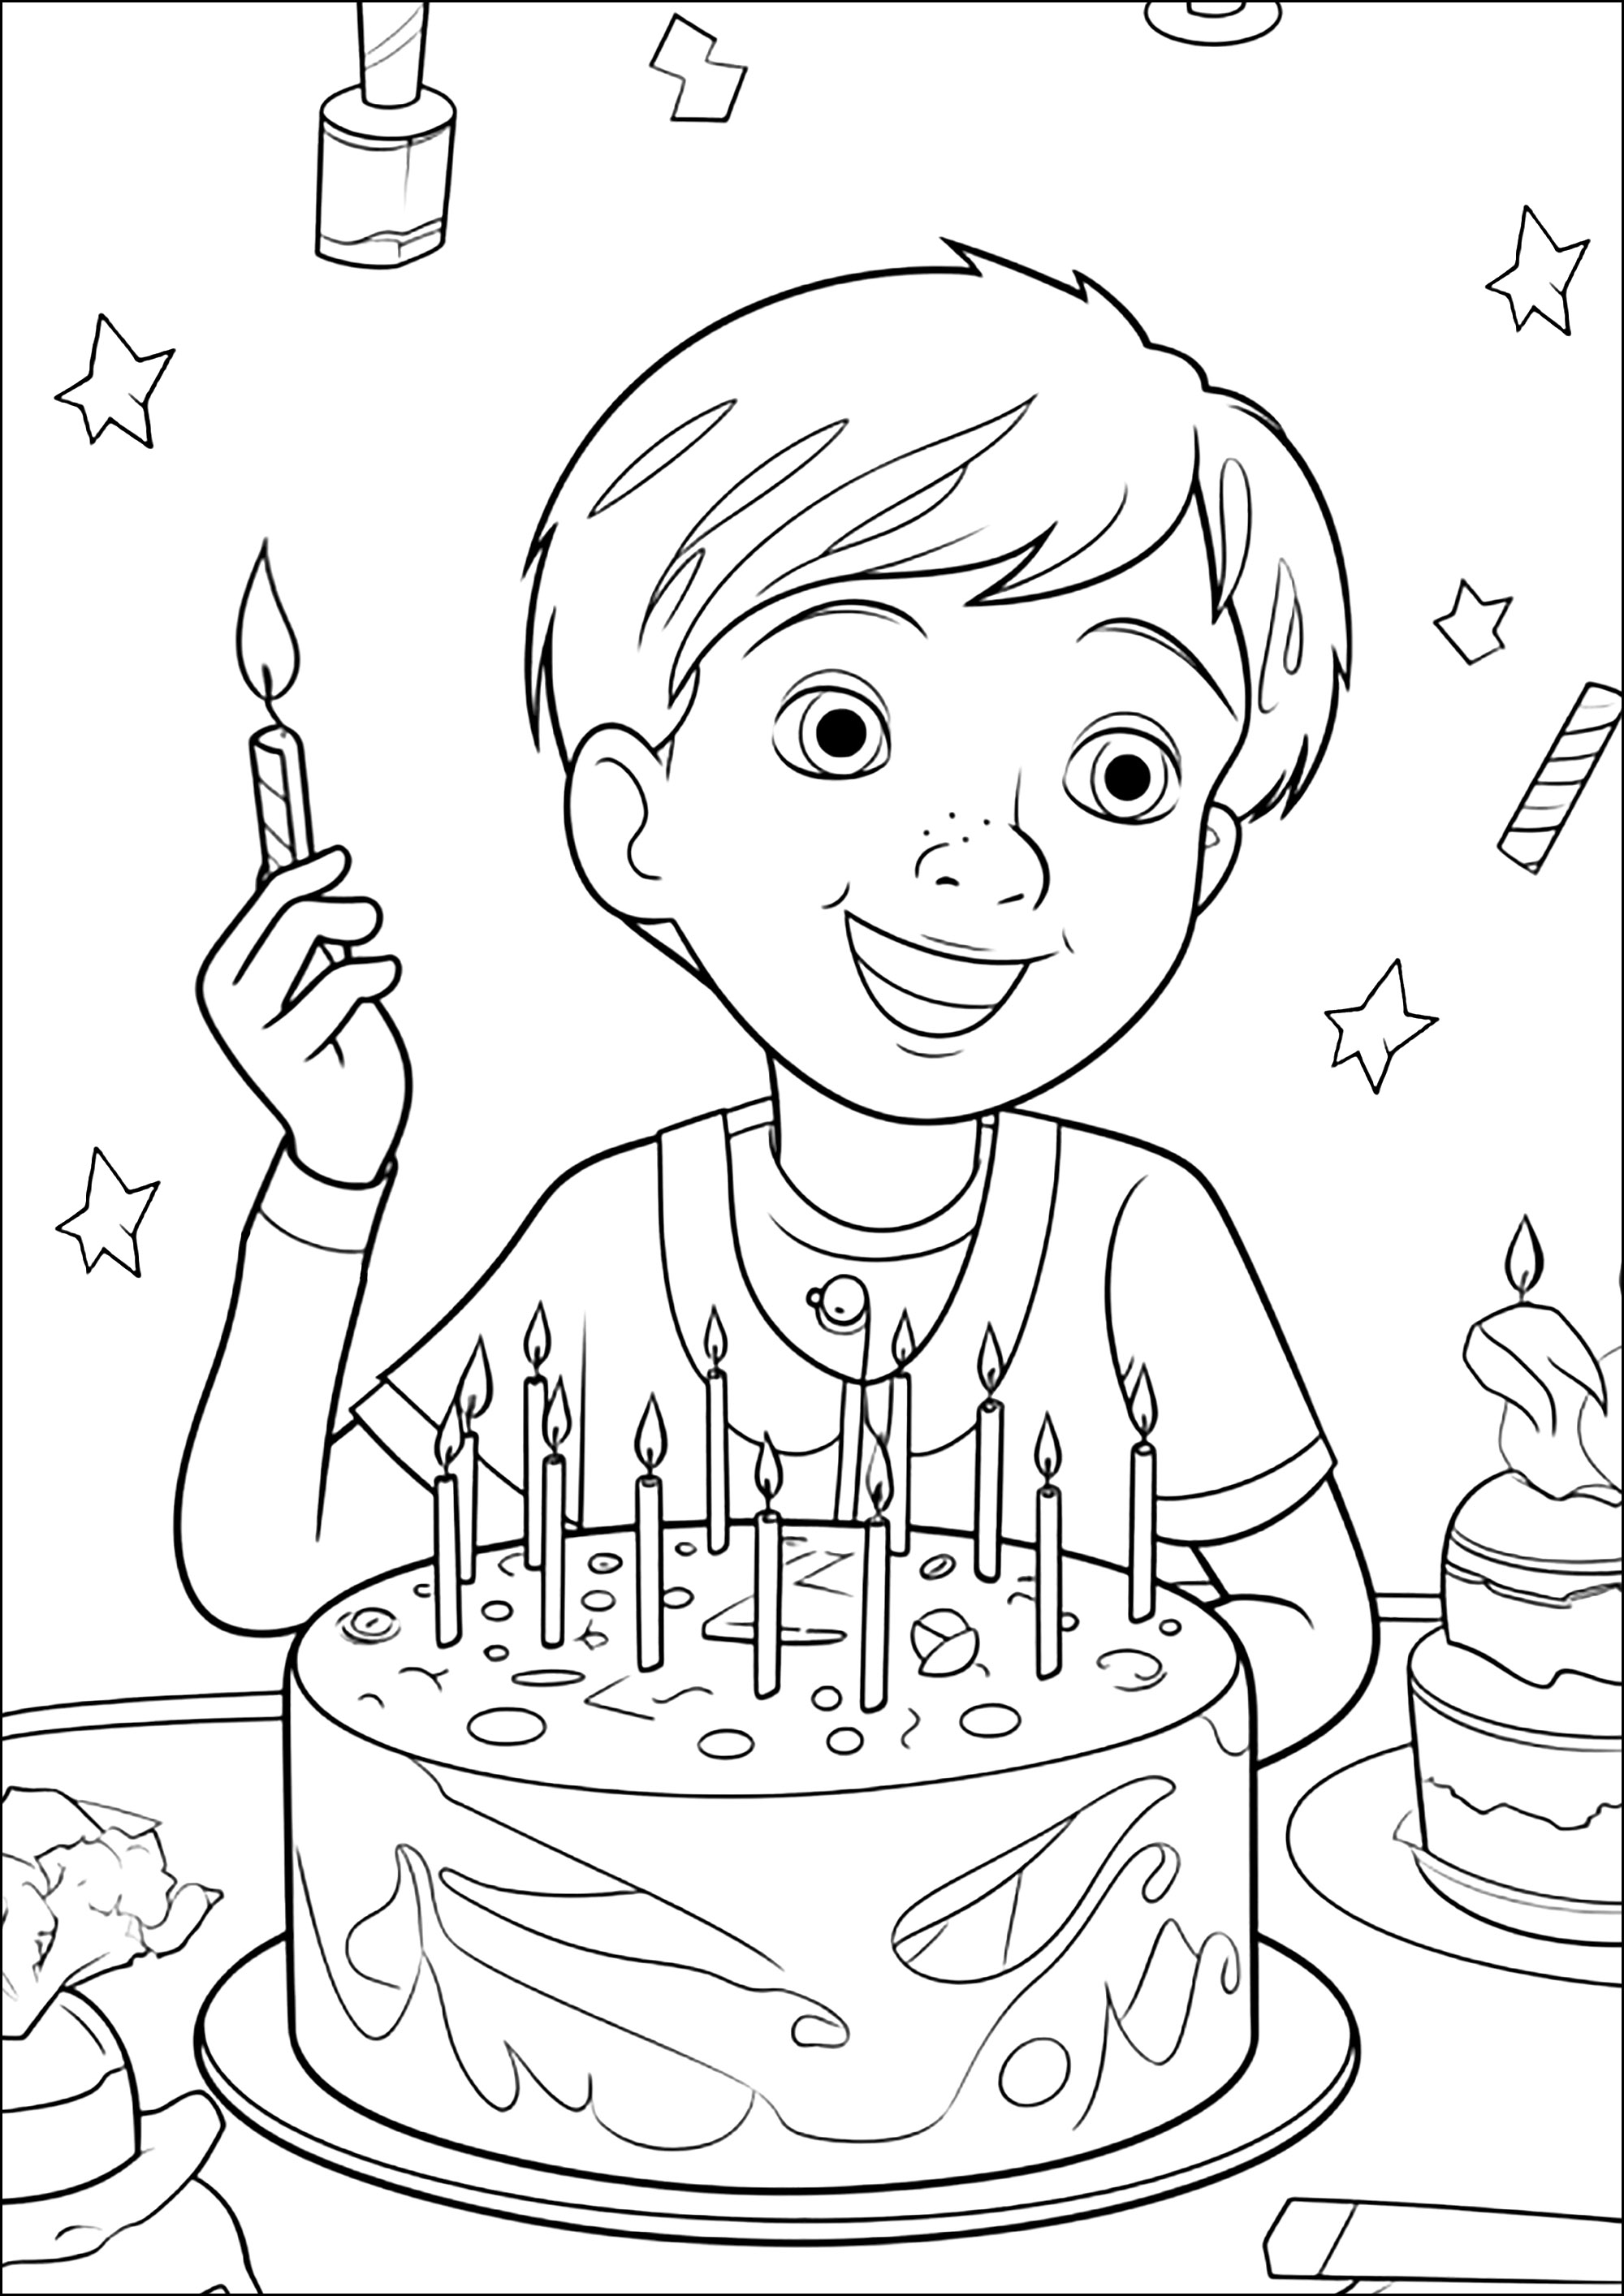 Um rapaz a festejar o seu aniversário com um bonito bolo